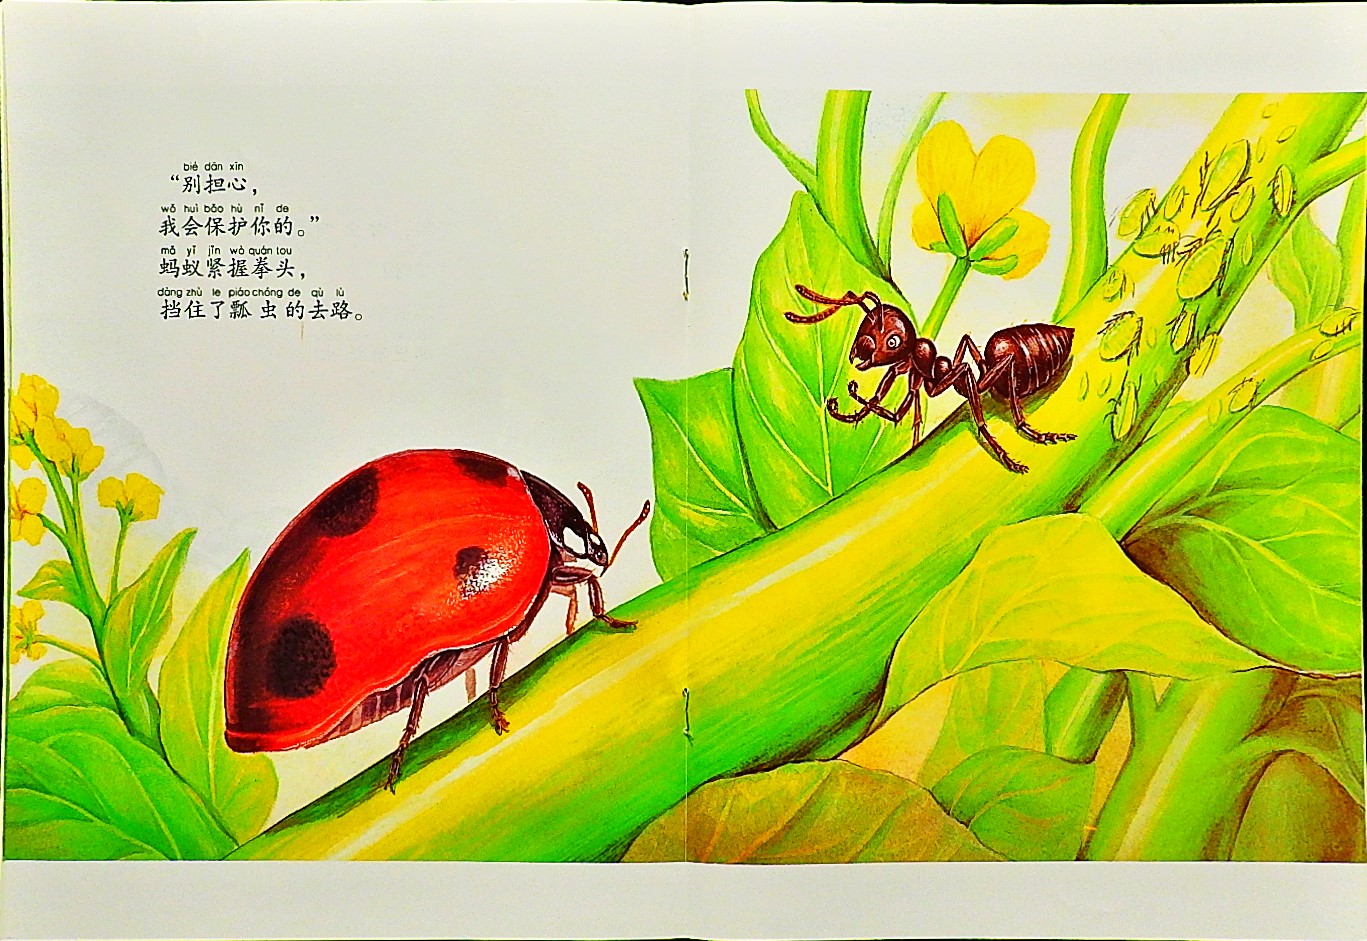 勇敢的小蚂蚁 (08),绘本,绘本故事,绘本阅读,故事书,童书,图画书,课外阅读